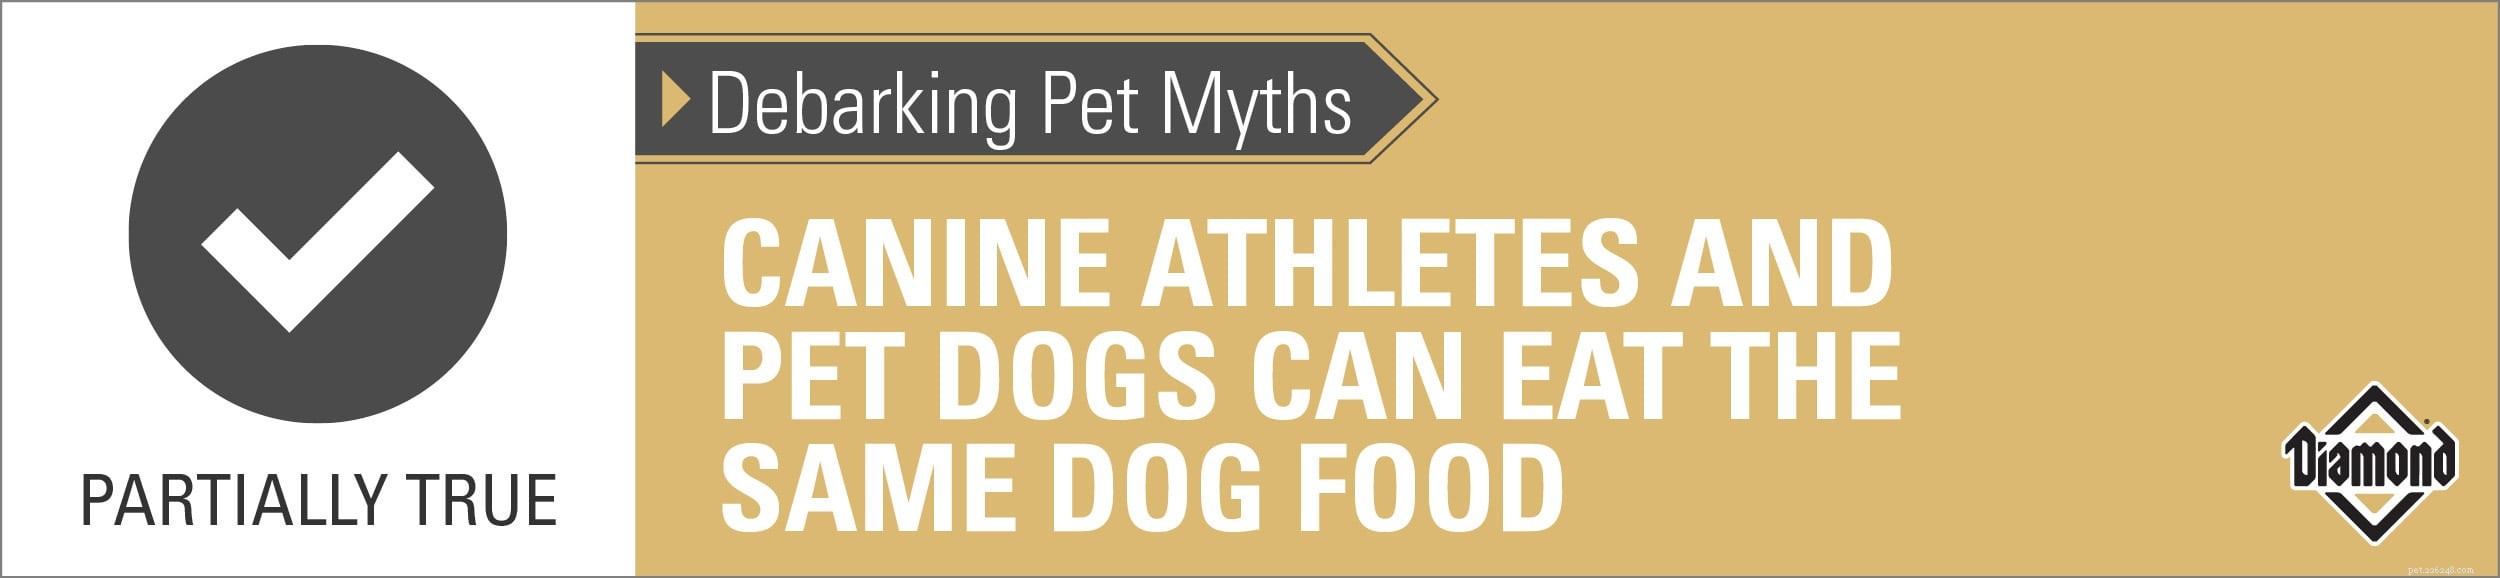 애완동물에 대한 오해를 풀기:개 운동선수와 애완견은 같은 사료를 먹을 수 있습니다